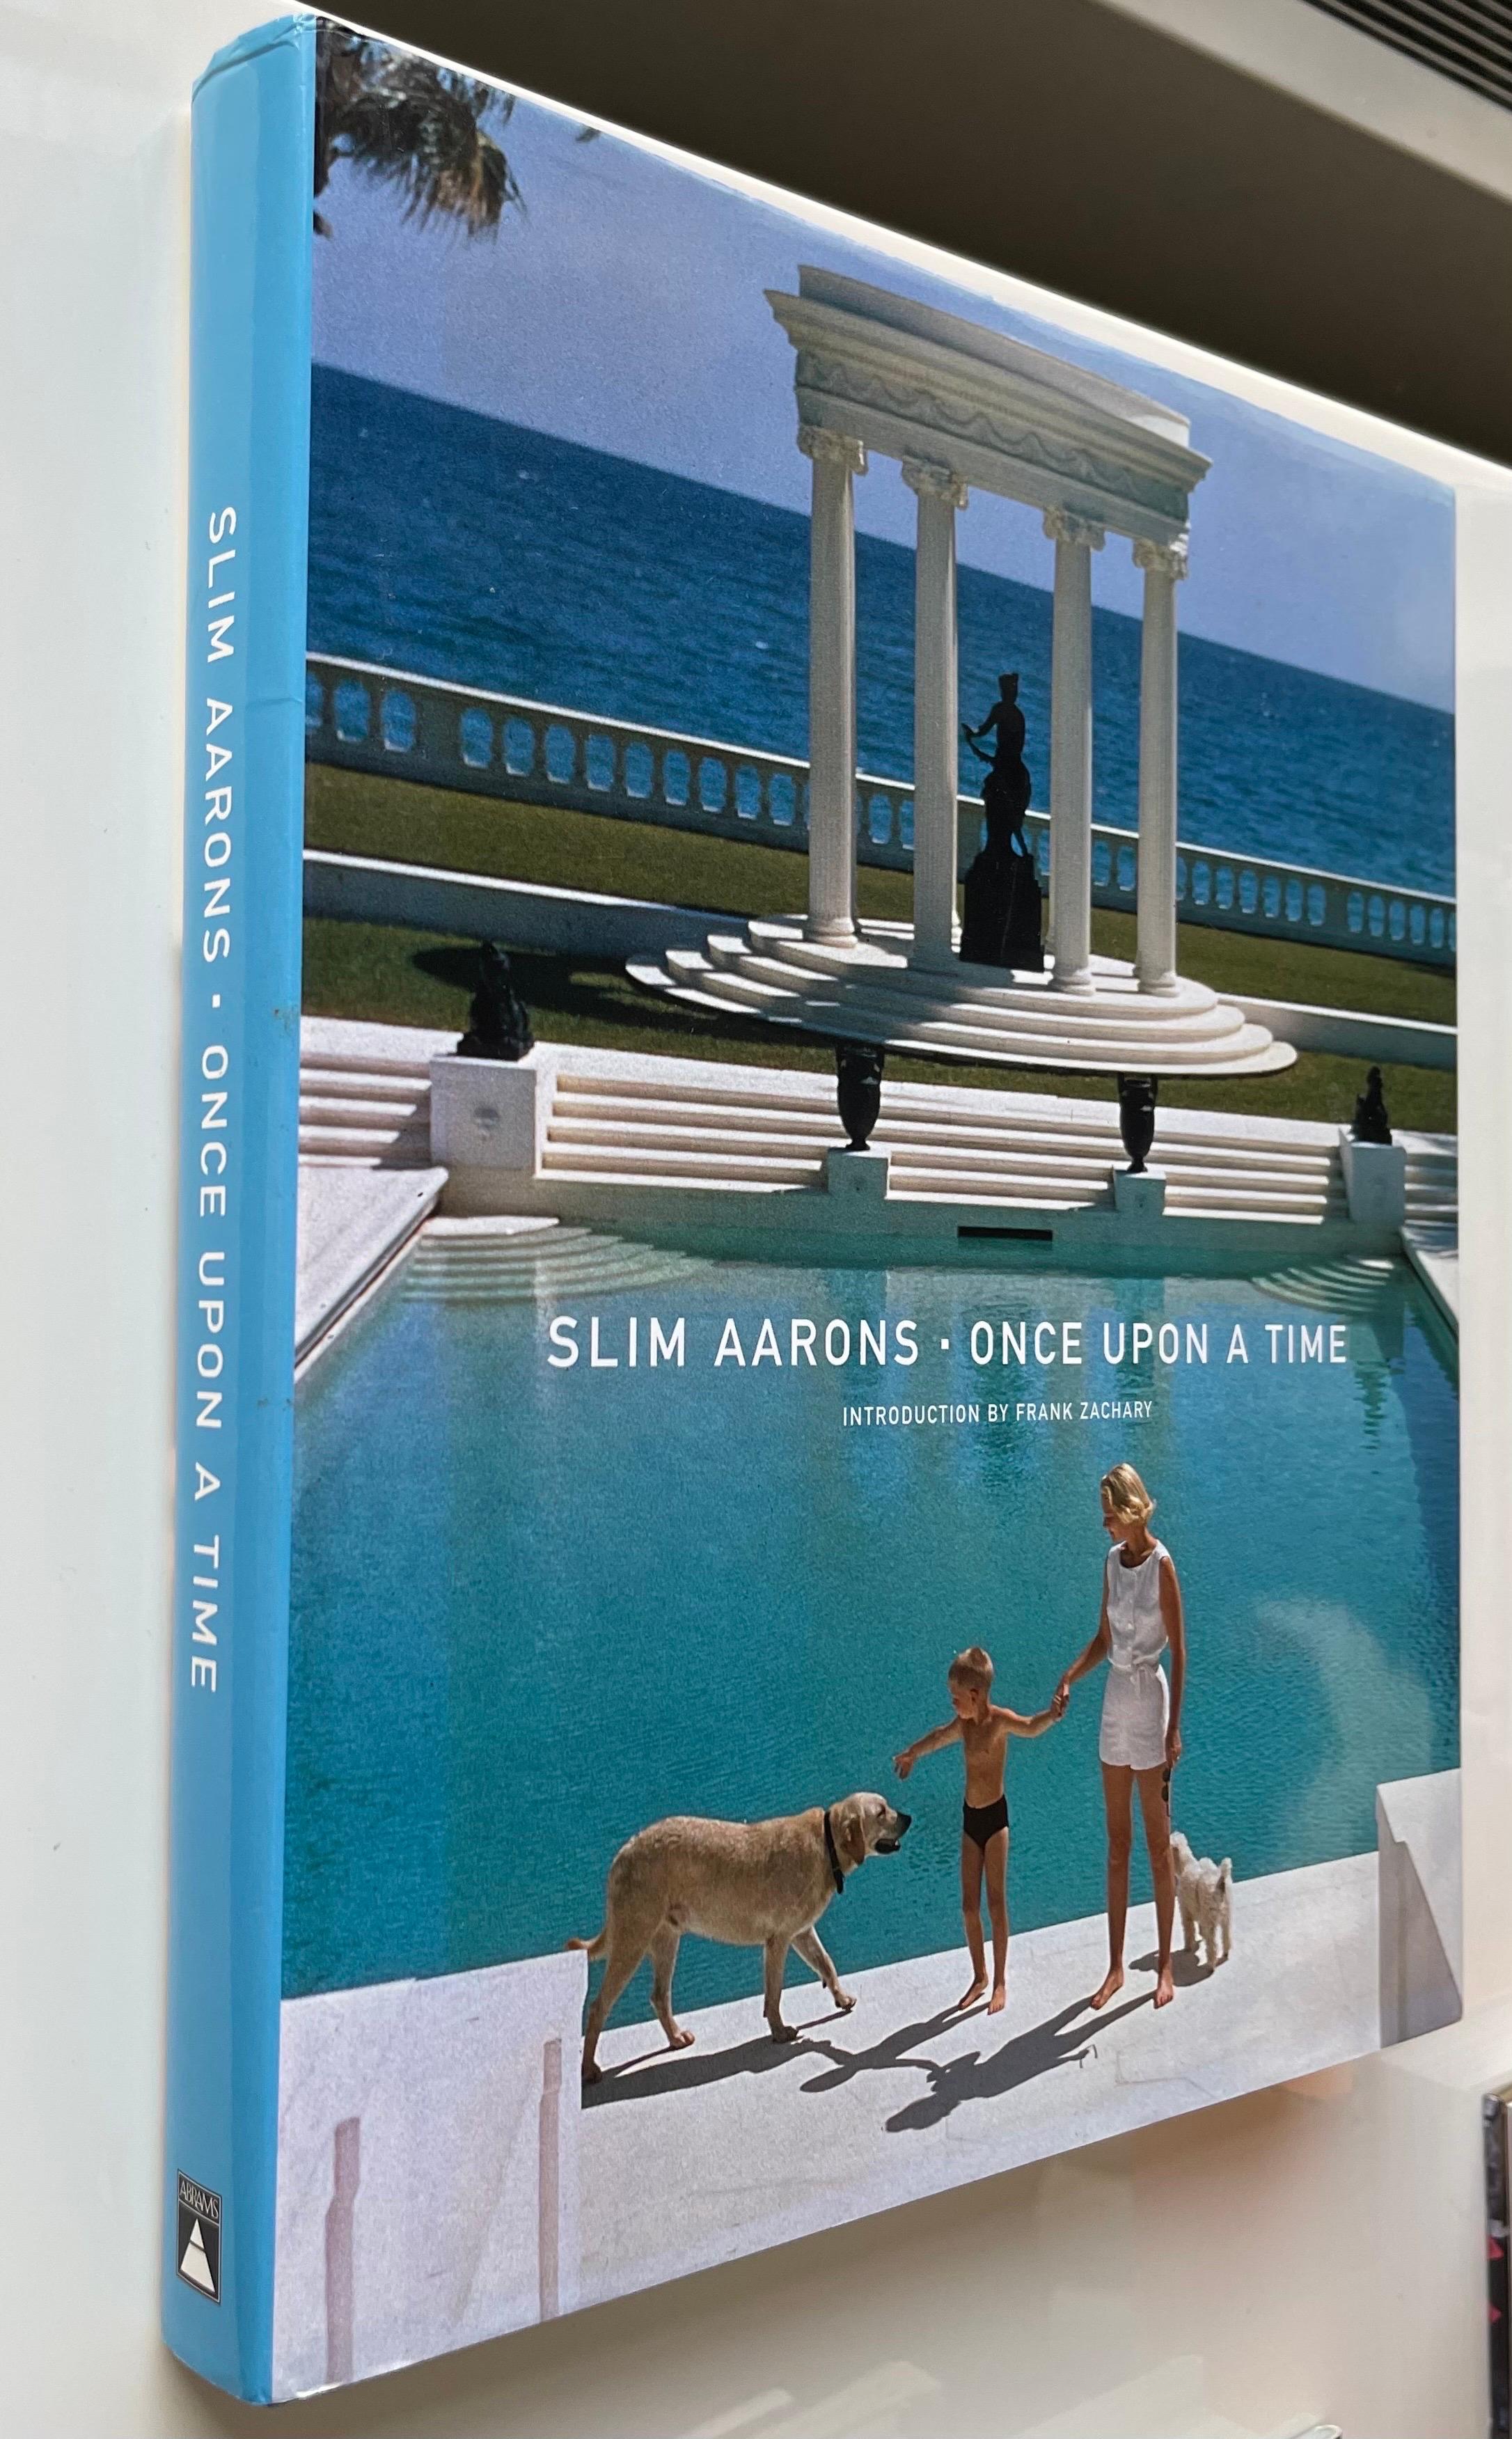 Slim Aarons: Once Upon A Time. Abrams 1. Auflage Hardcover, 2003. 240 Seiten. Mit vielen der ikonischen Fotografien von Slim Aaron. 